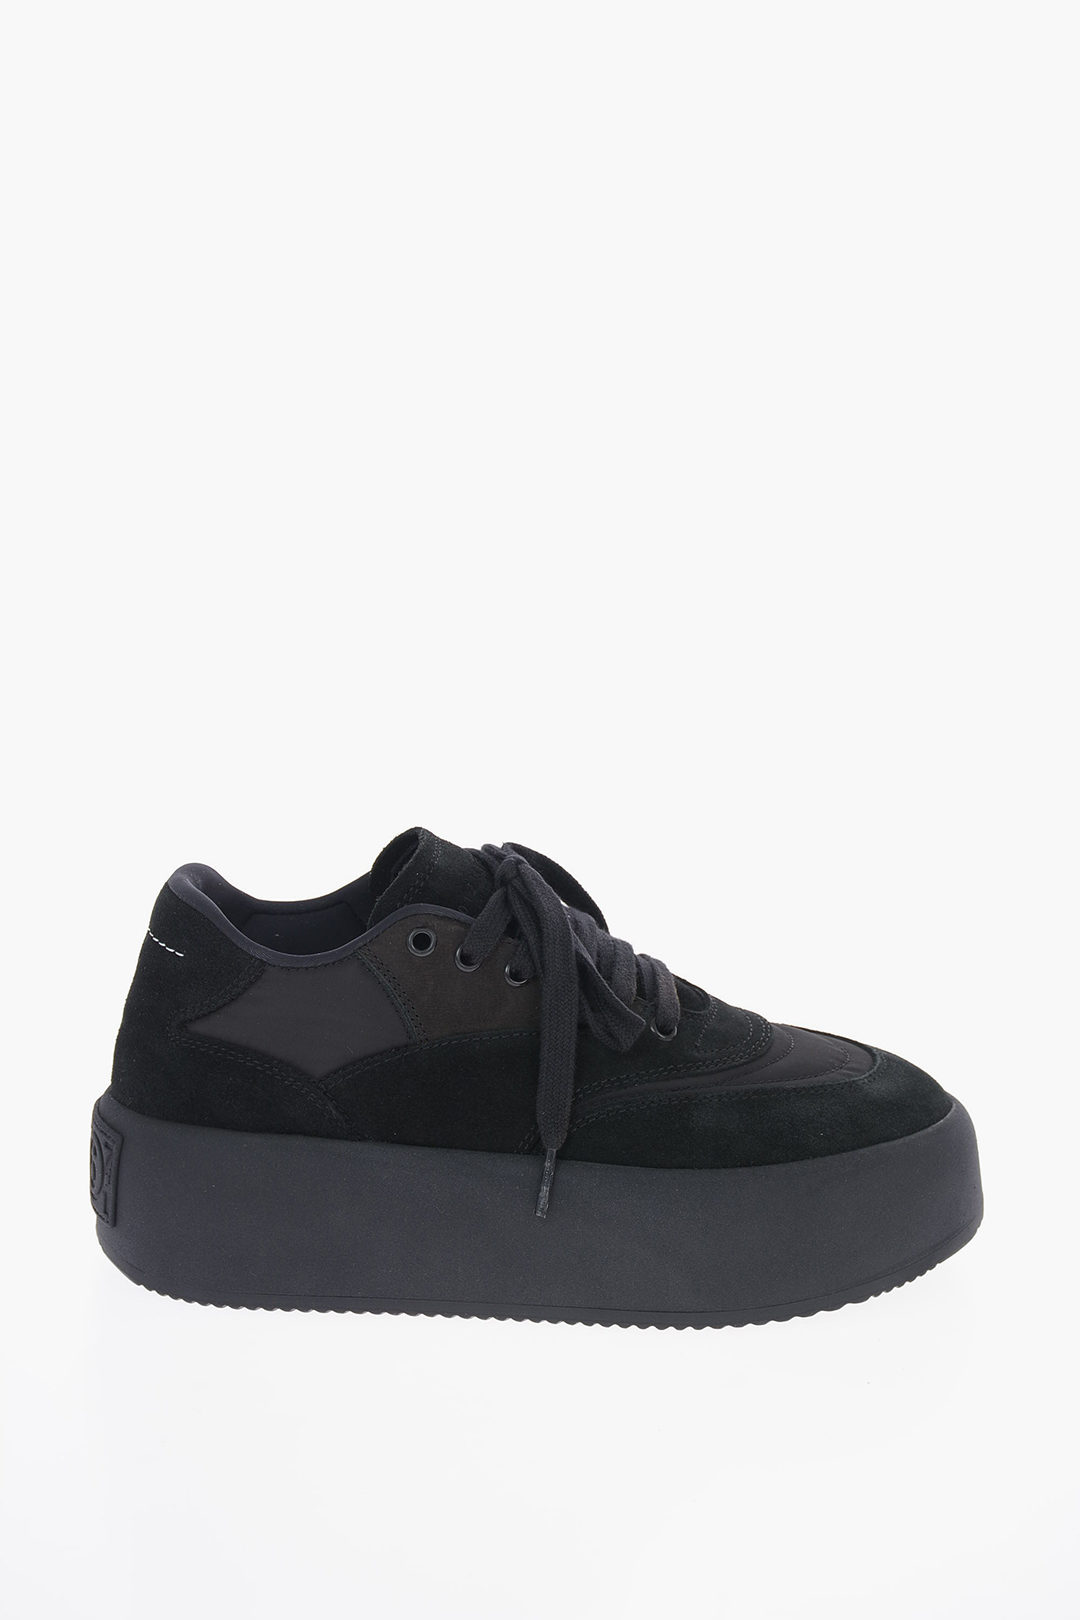 platform sneaker black suede leather